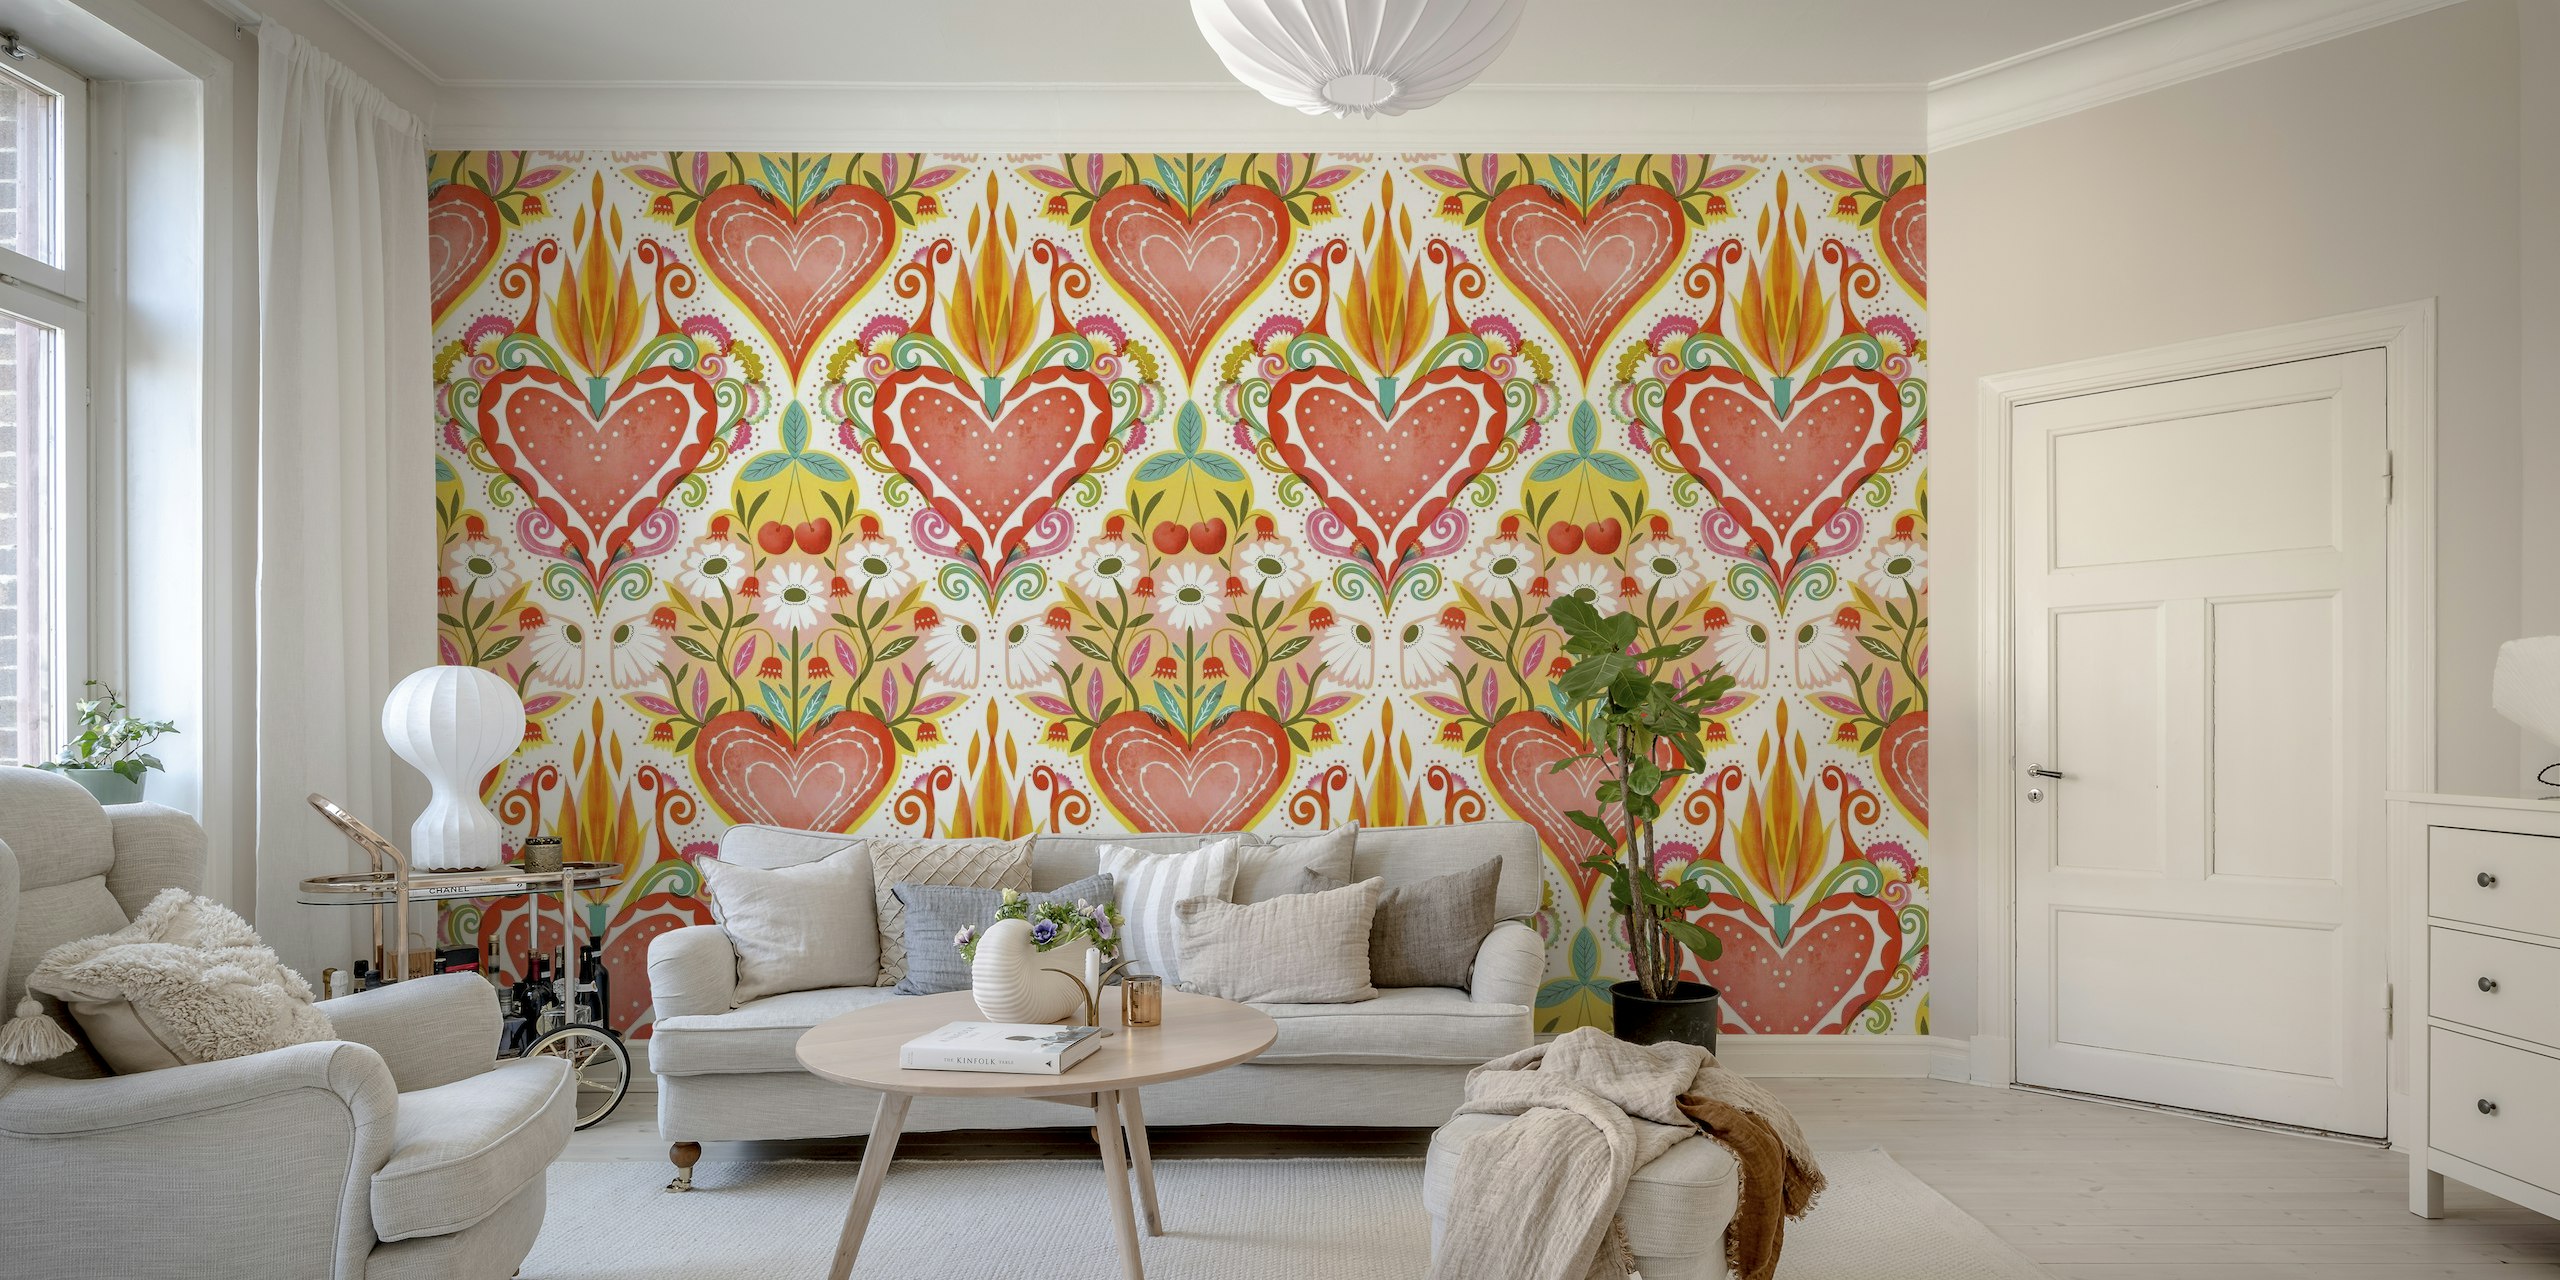 Šareni zidni mural inspiriran folklorom s velikim središnjim srcem s plamenom i manjim okolnim srcima i cvjetnim uzorcima.